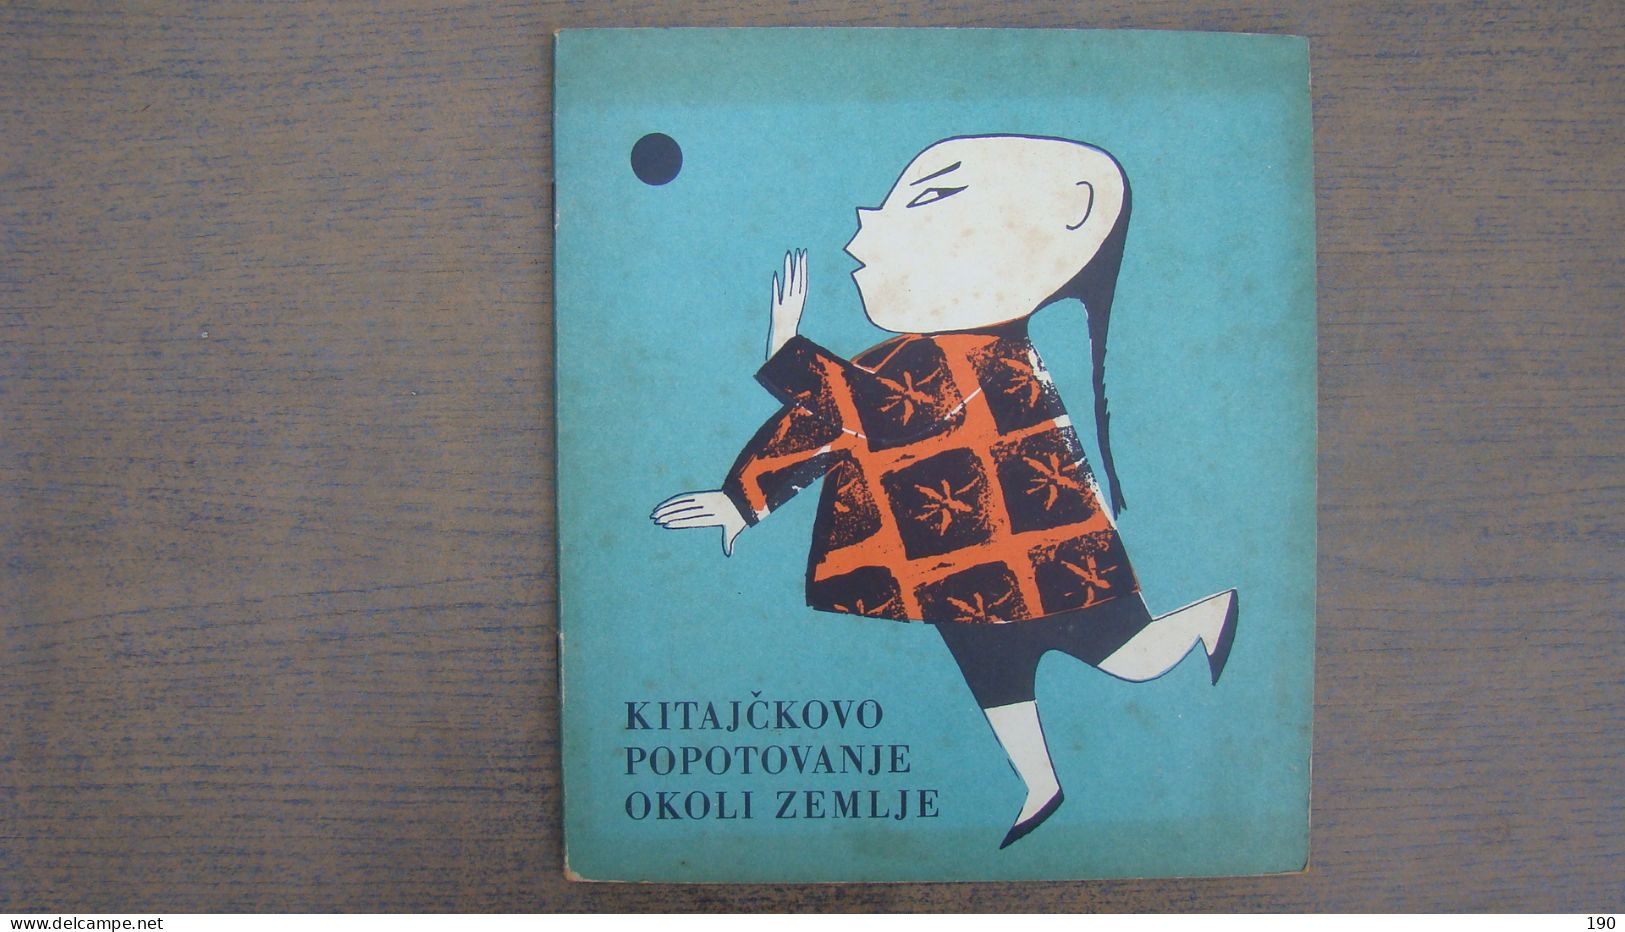 Kitajckovo Popotovanje Okoli Zemlje (Vladimir Nazor),Illustrated:Vesna Borcic - Langues Slaves